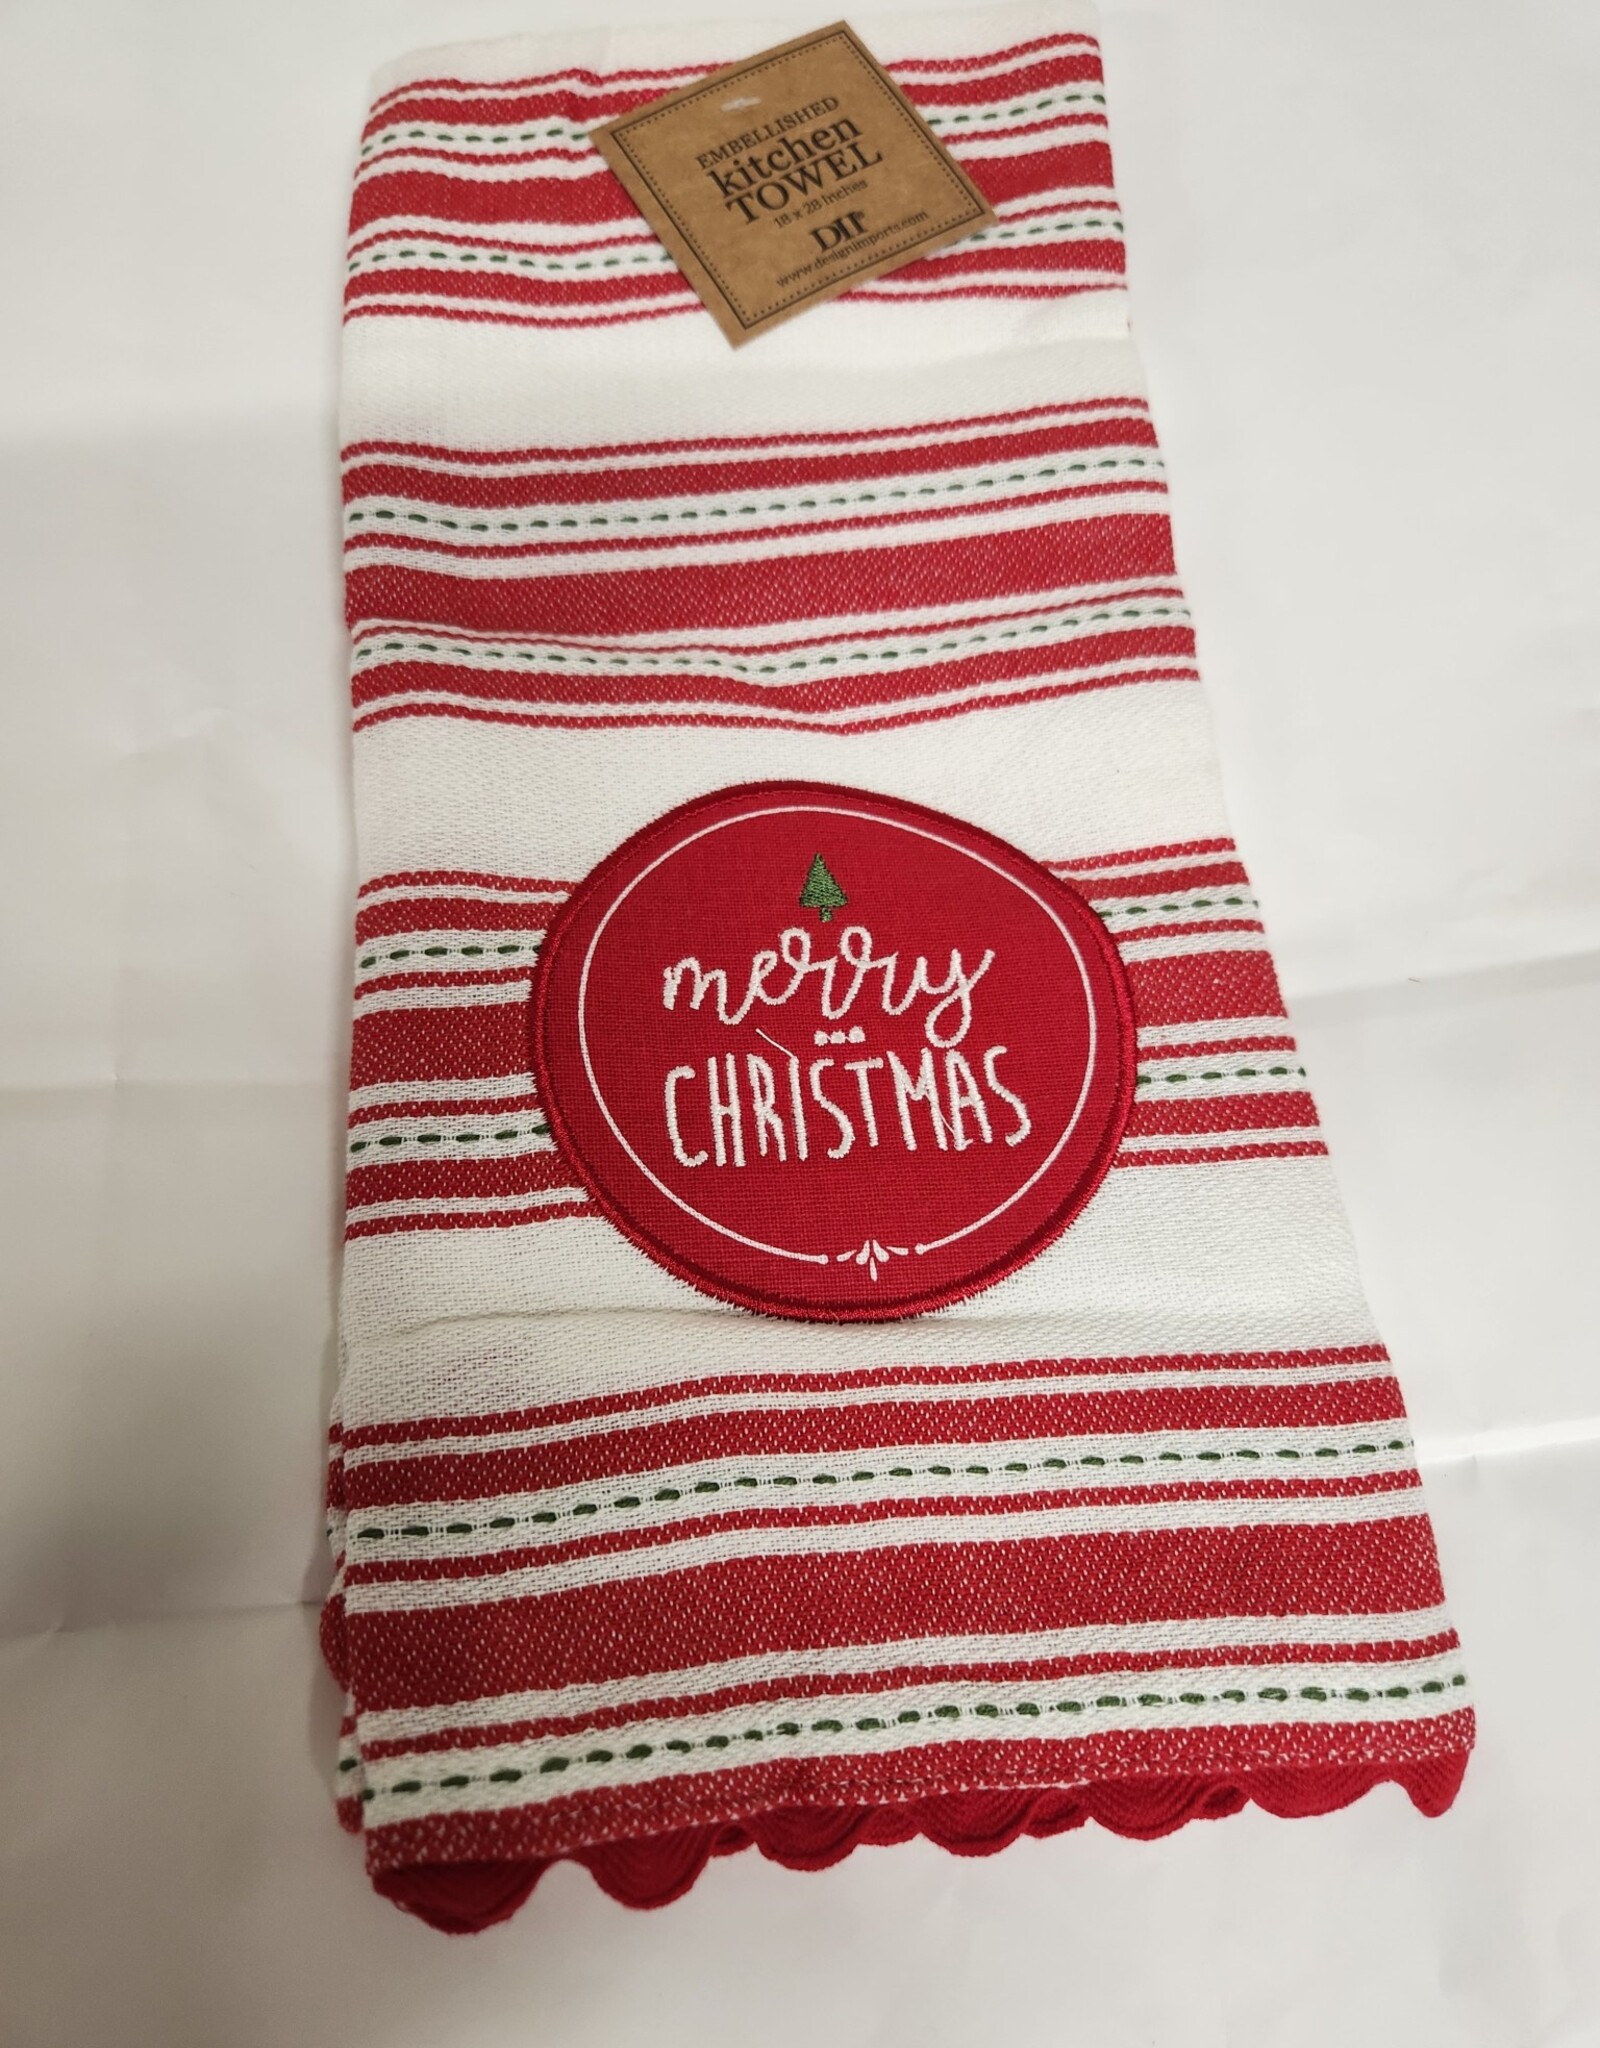 Christmas DII - Merry Christmas Embellished Dish Towel